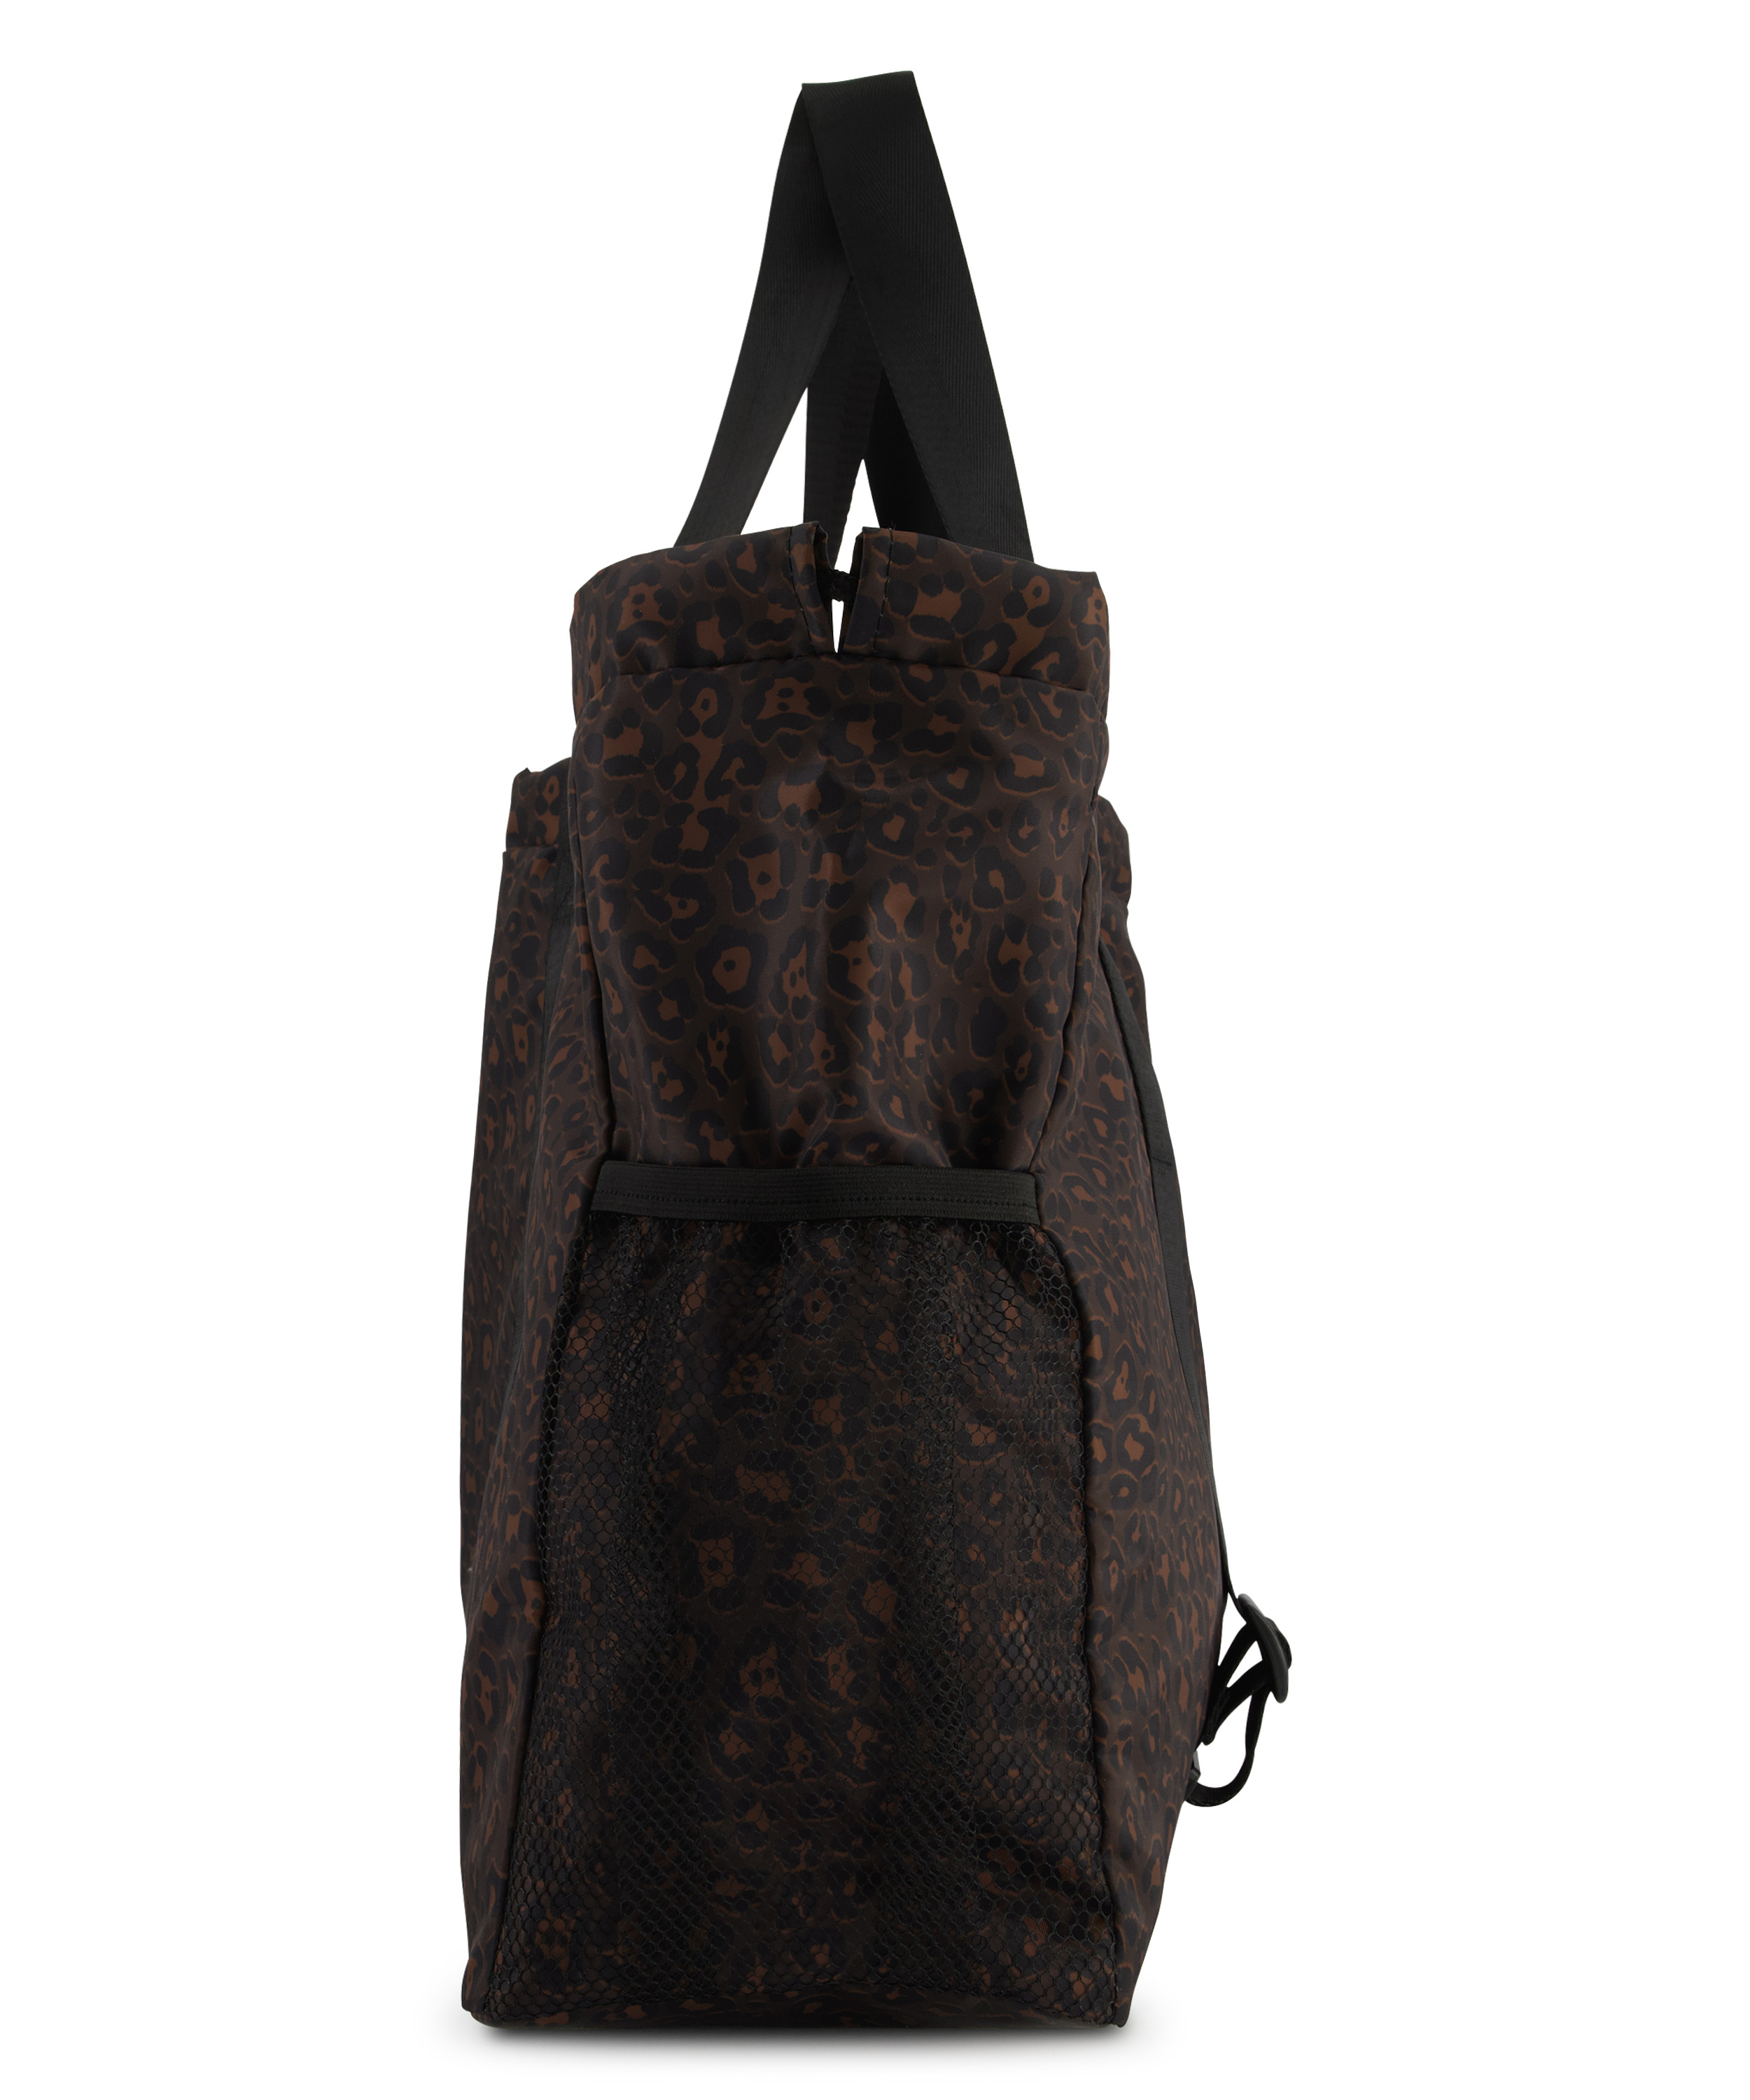 HKMX Tote Yoga bag, Brown, main